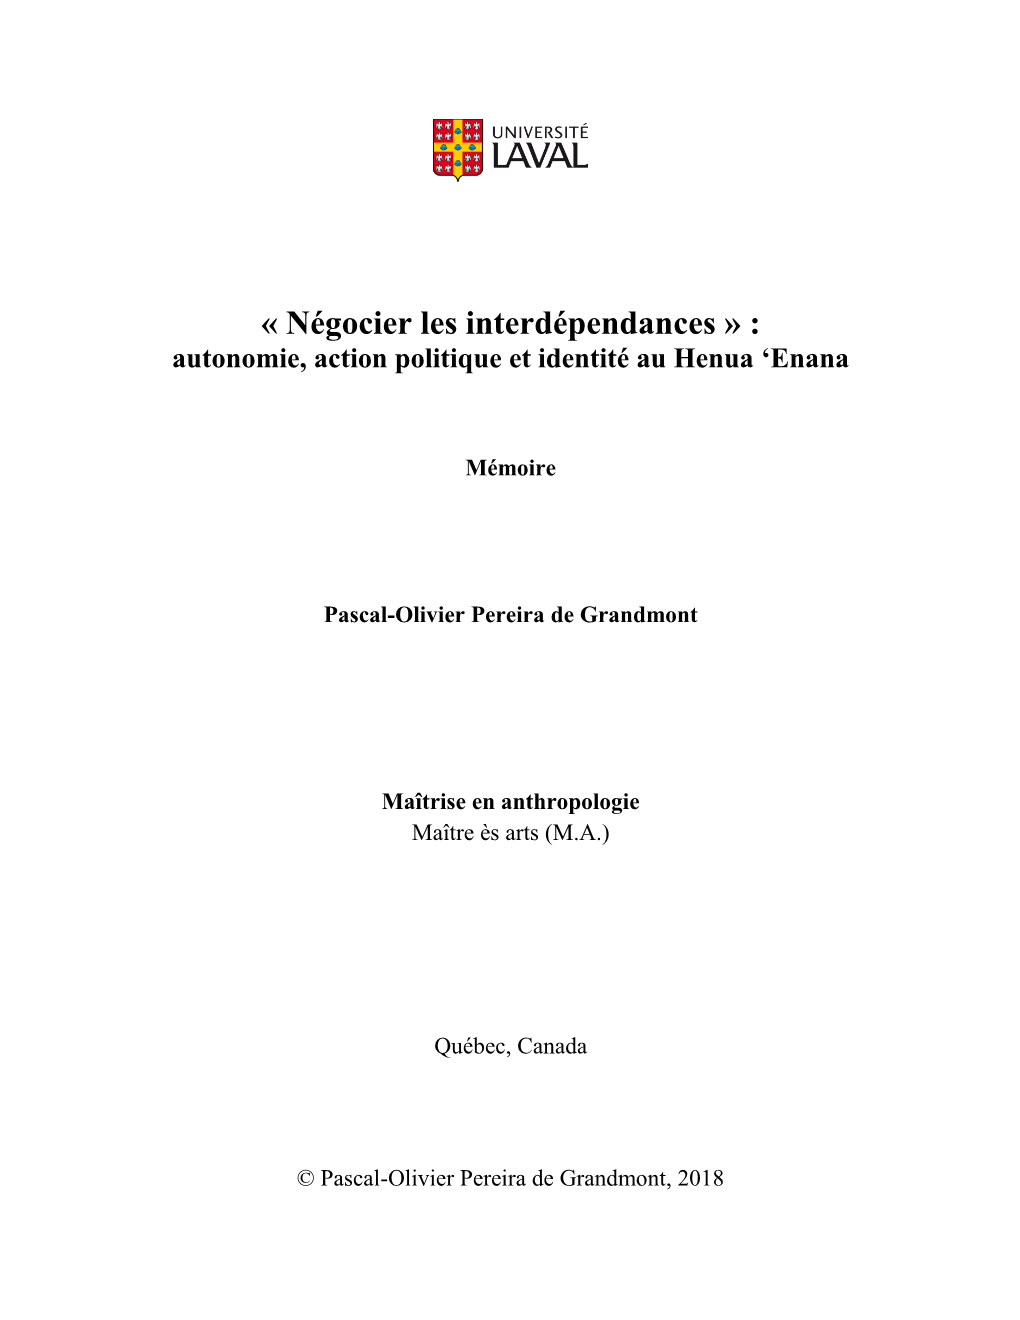 « Négocier Les Interdépendances » : Autonomie, Action Politique Et Identité Au Henua ‘Enana